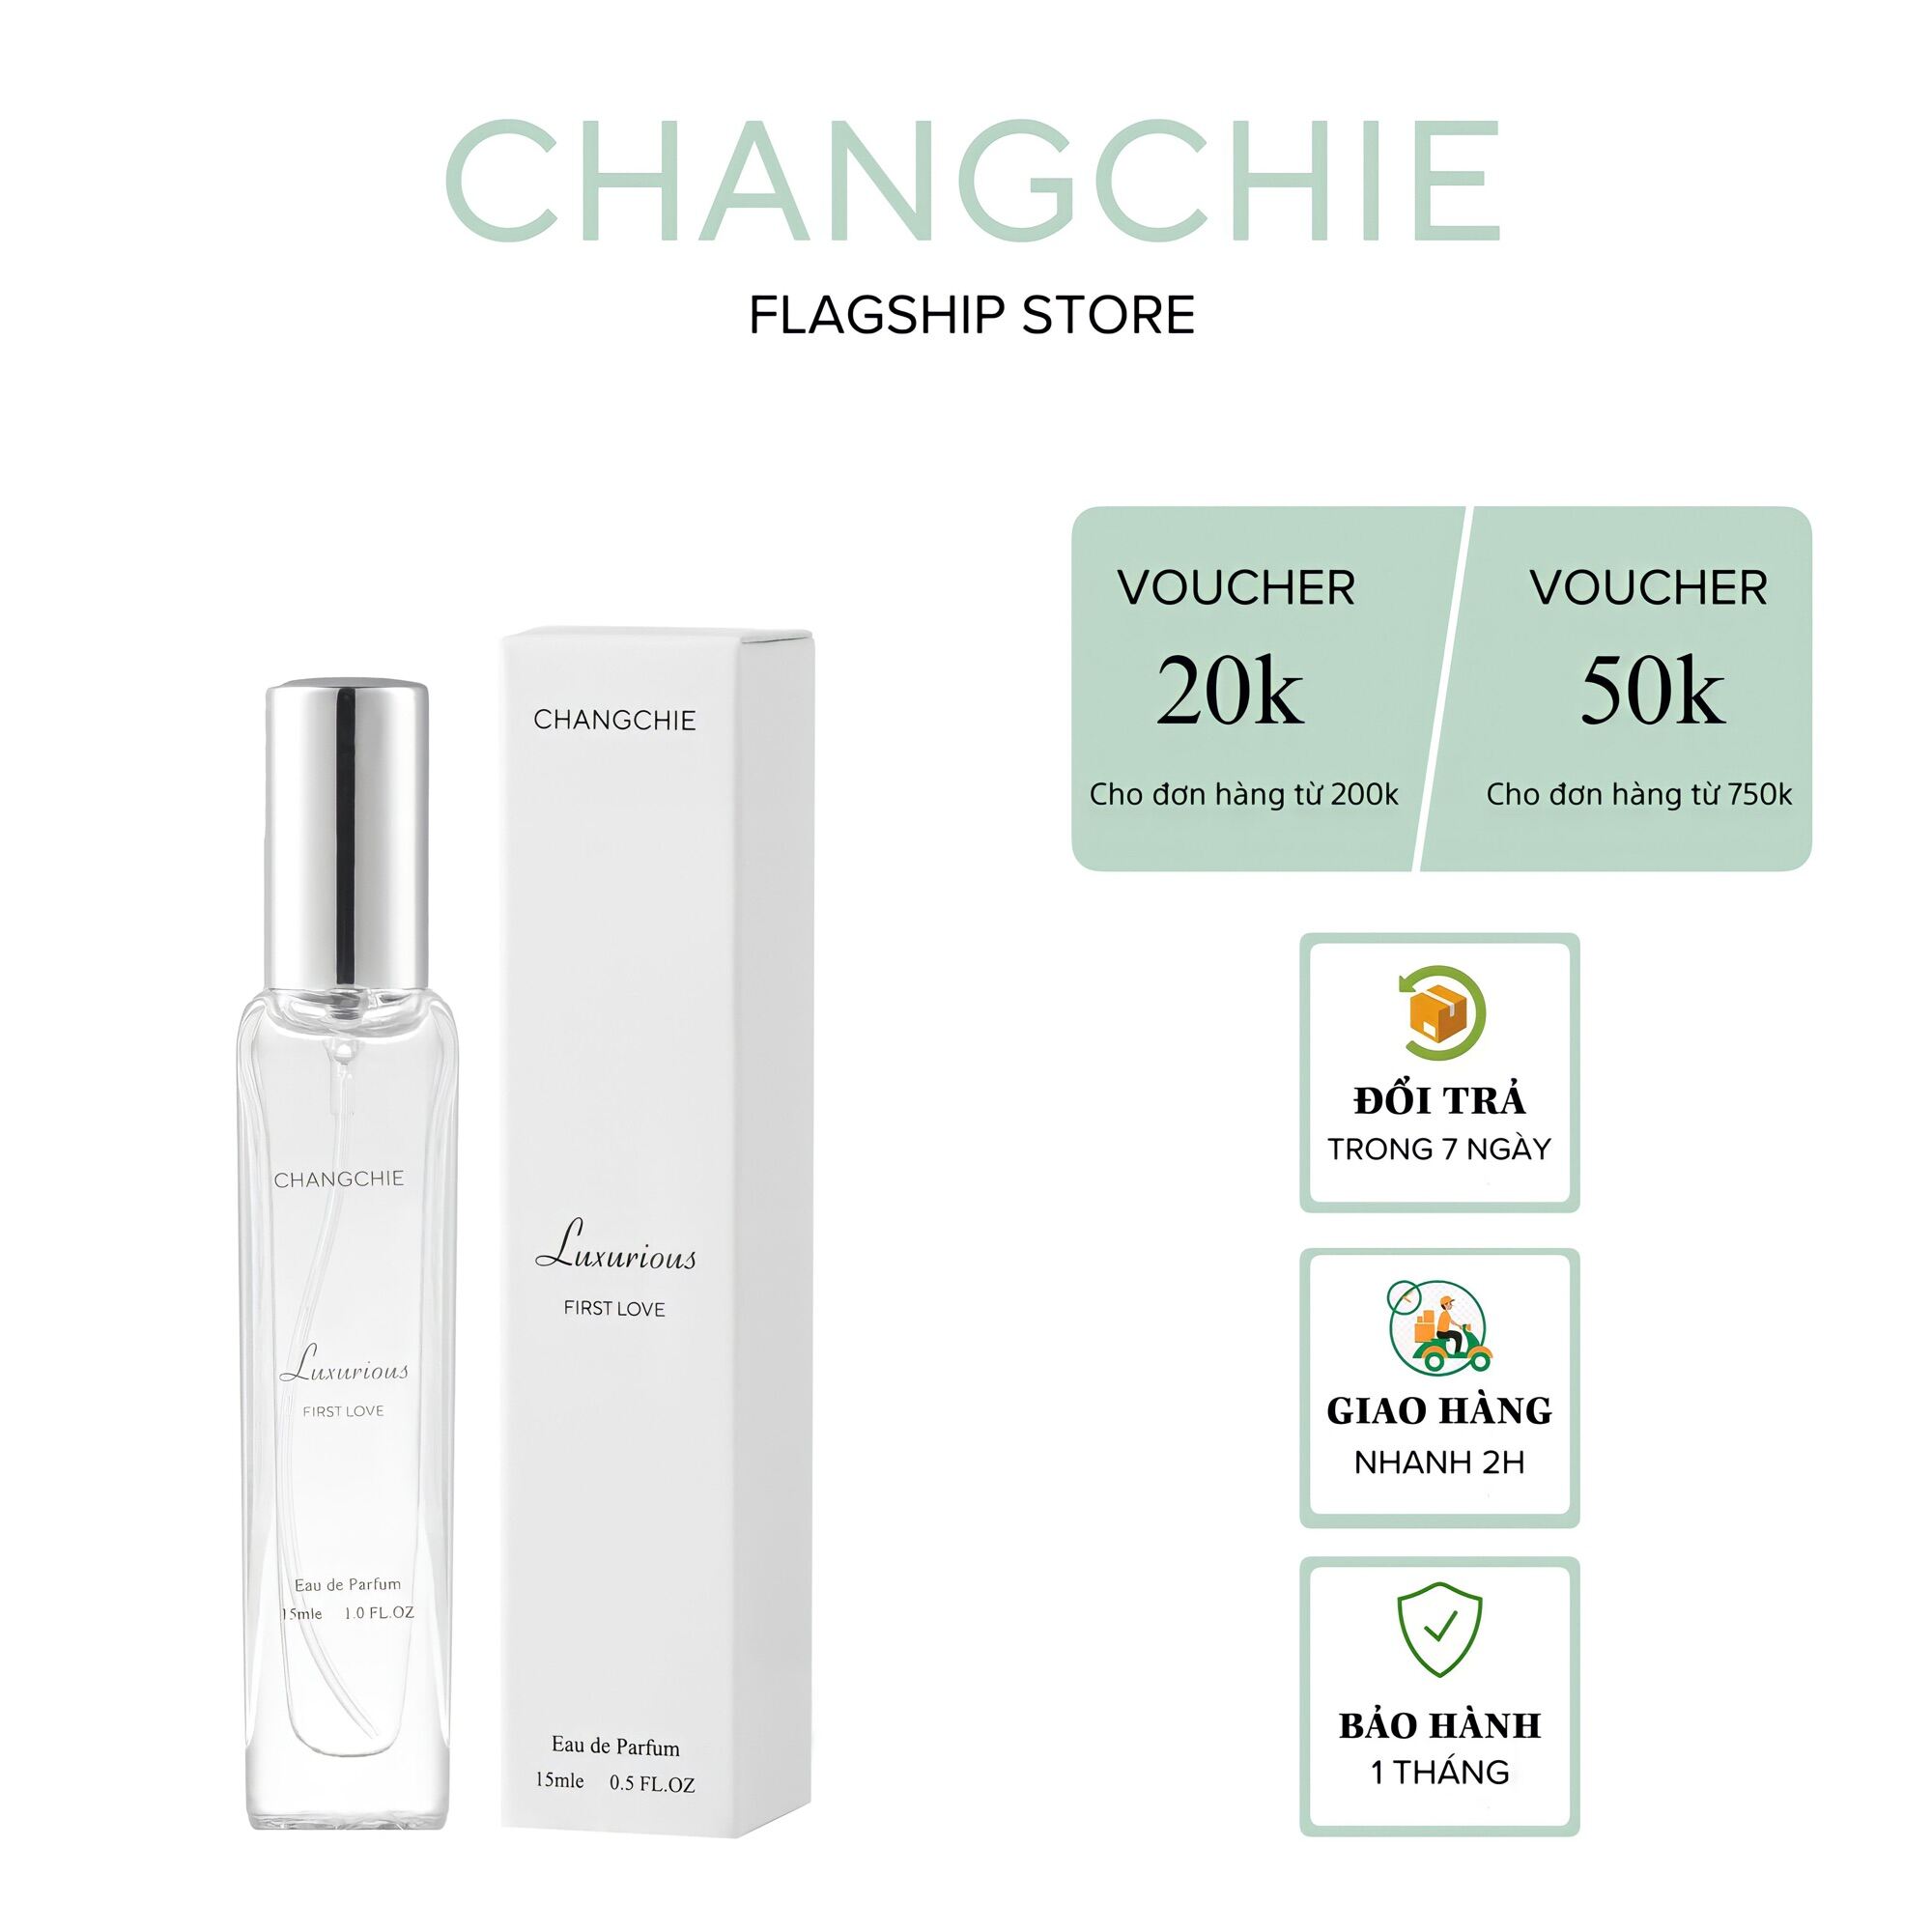 nước hoa nữ Changchie Luxurious chinh hãng cao cấp 15ml thumbnail